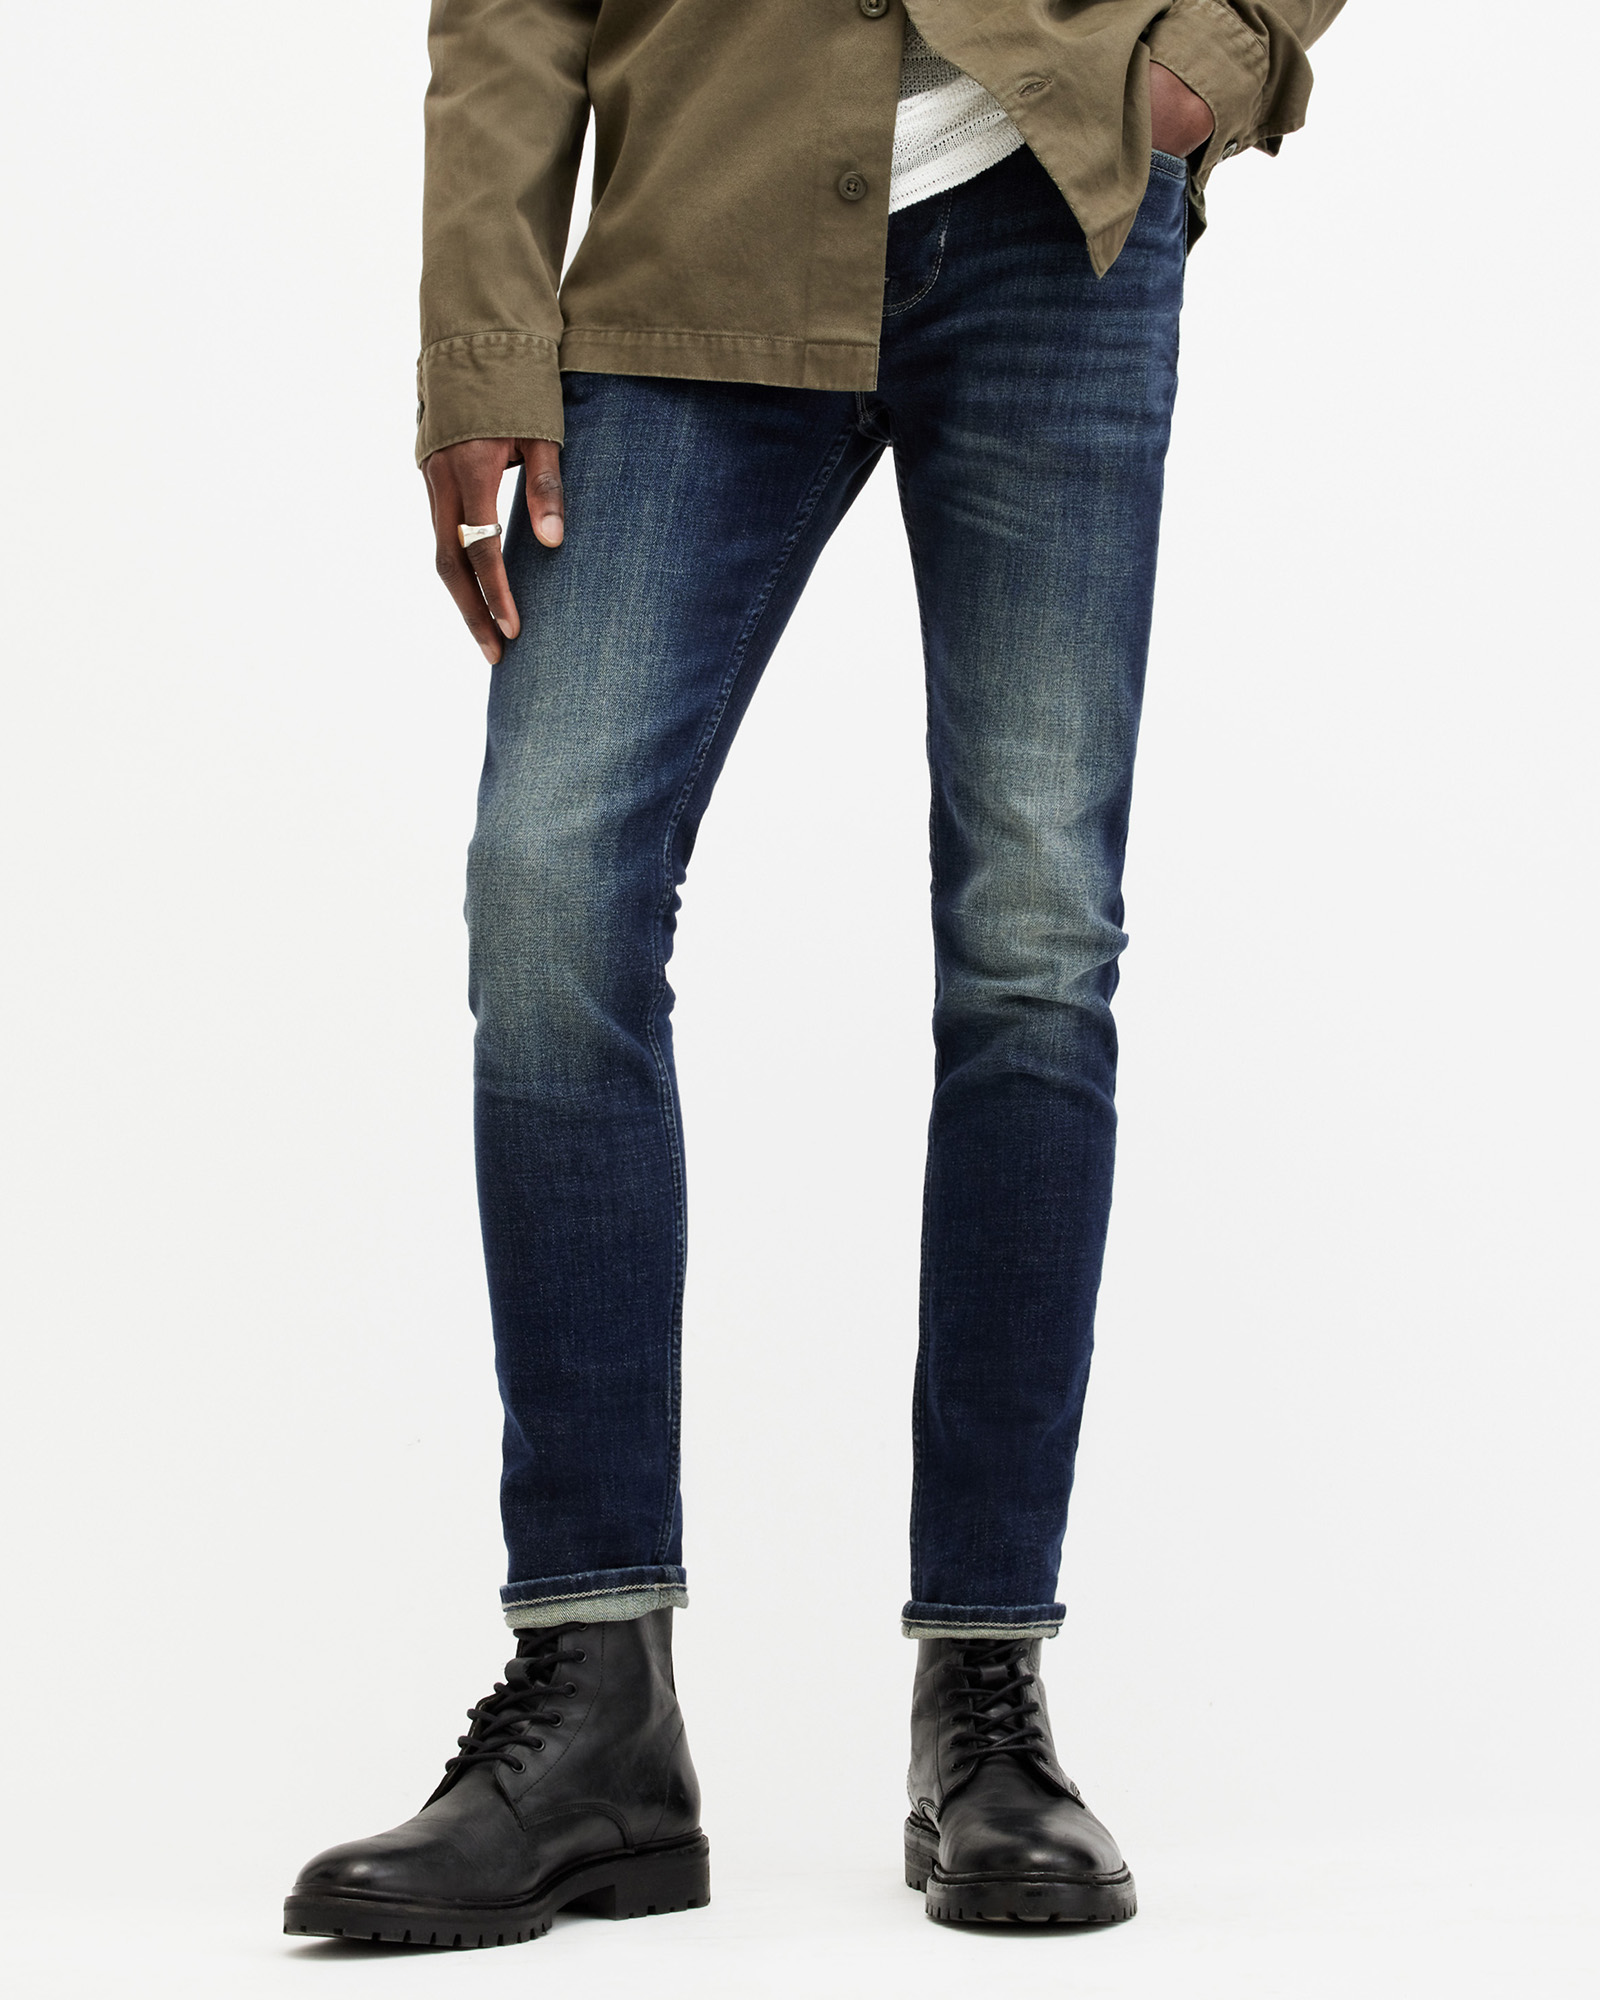 AllSaints Men's Cotton Traditional Cigarette Skinny Jeans, Blue, Size: 30/L32